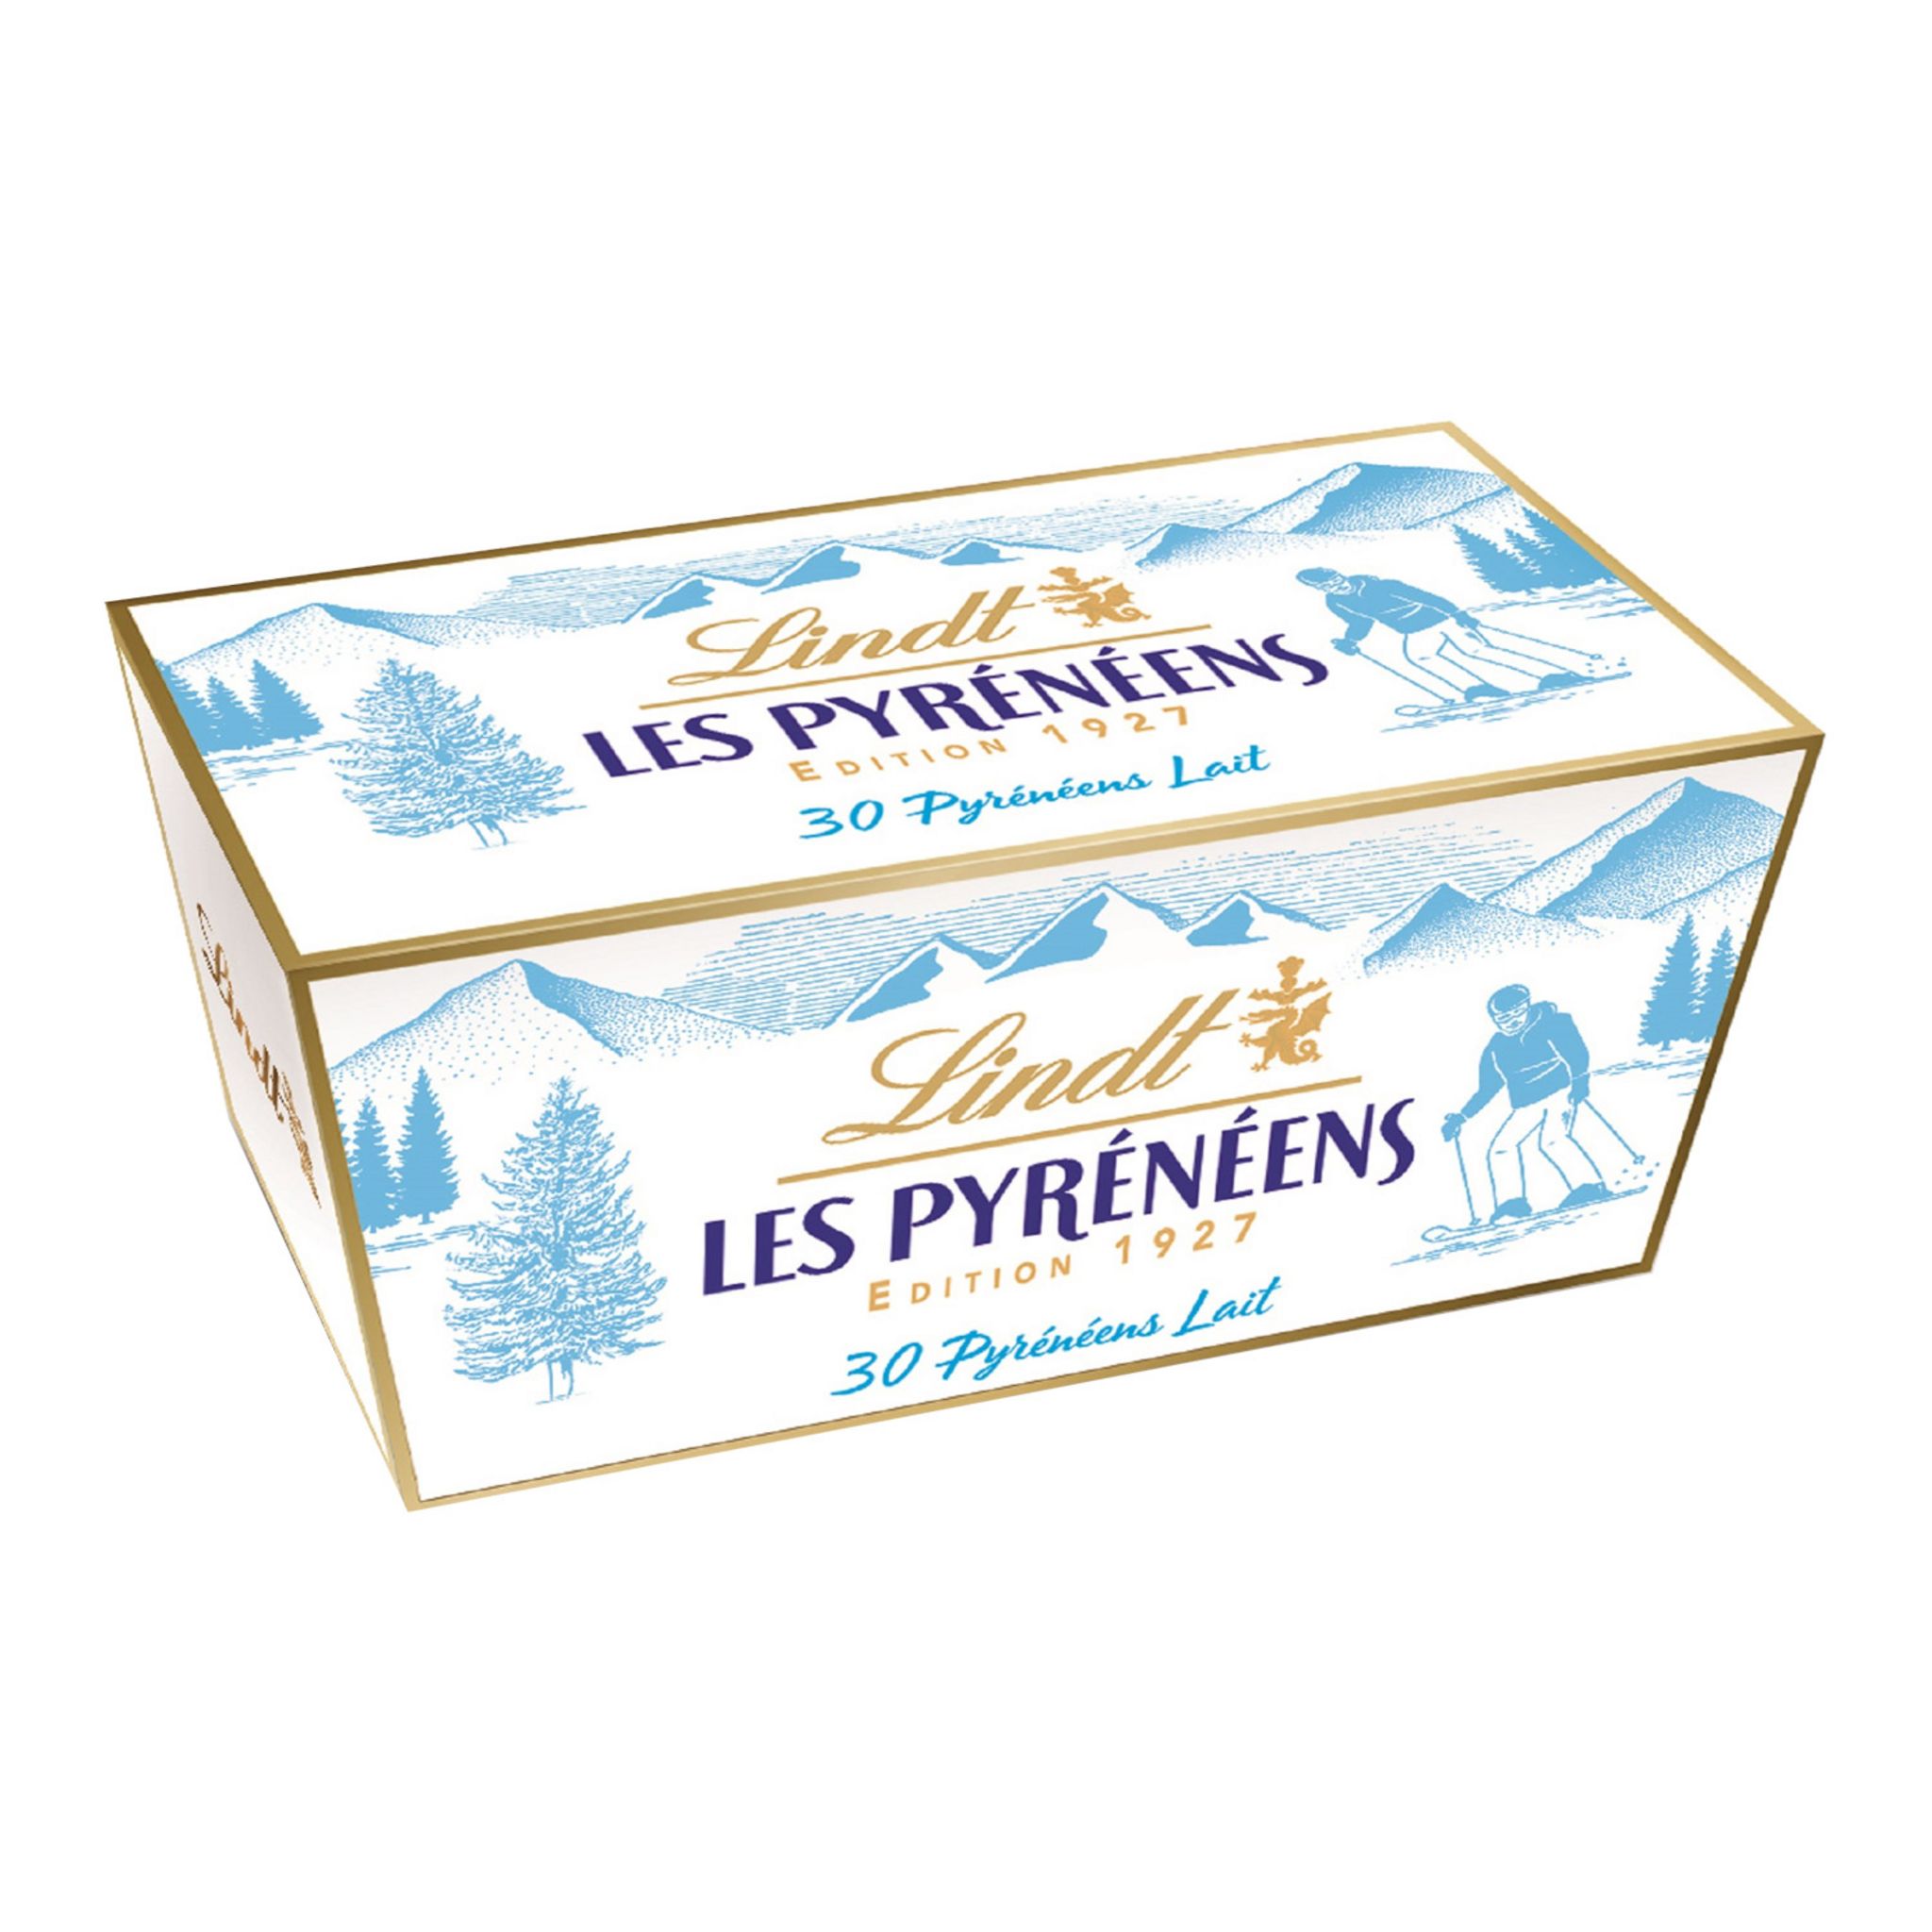 Les Pyrénéens de Lindt - Le chocolat frisson 